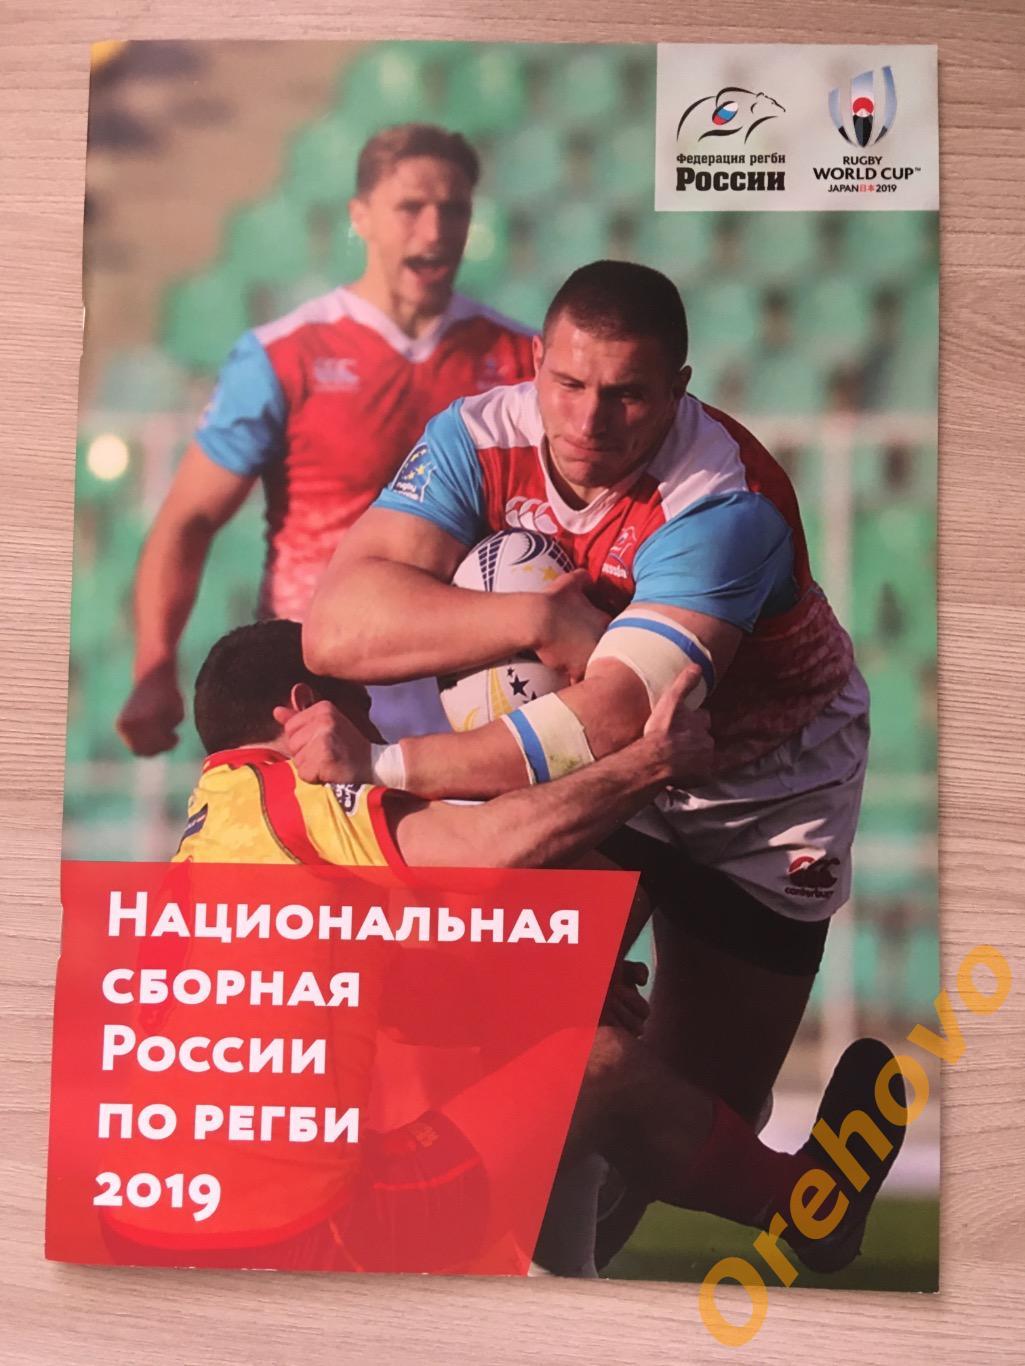 Национальная Сборная России по регби 2019